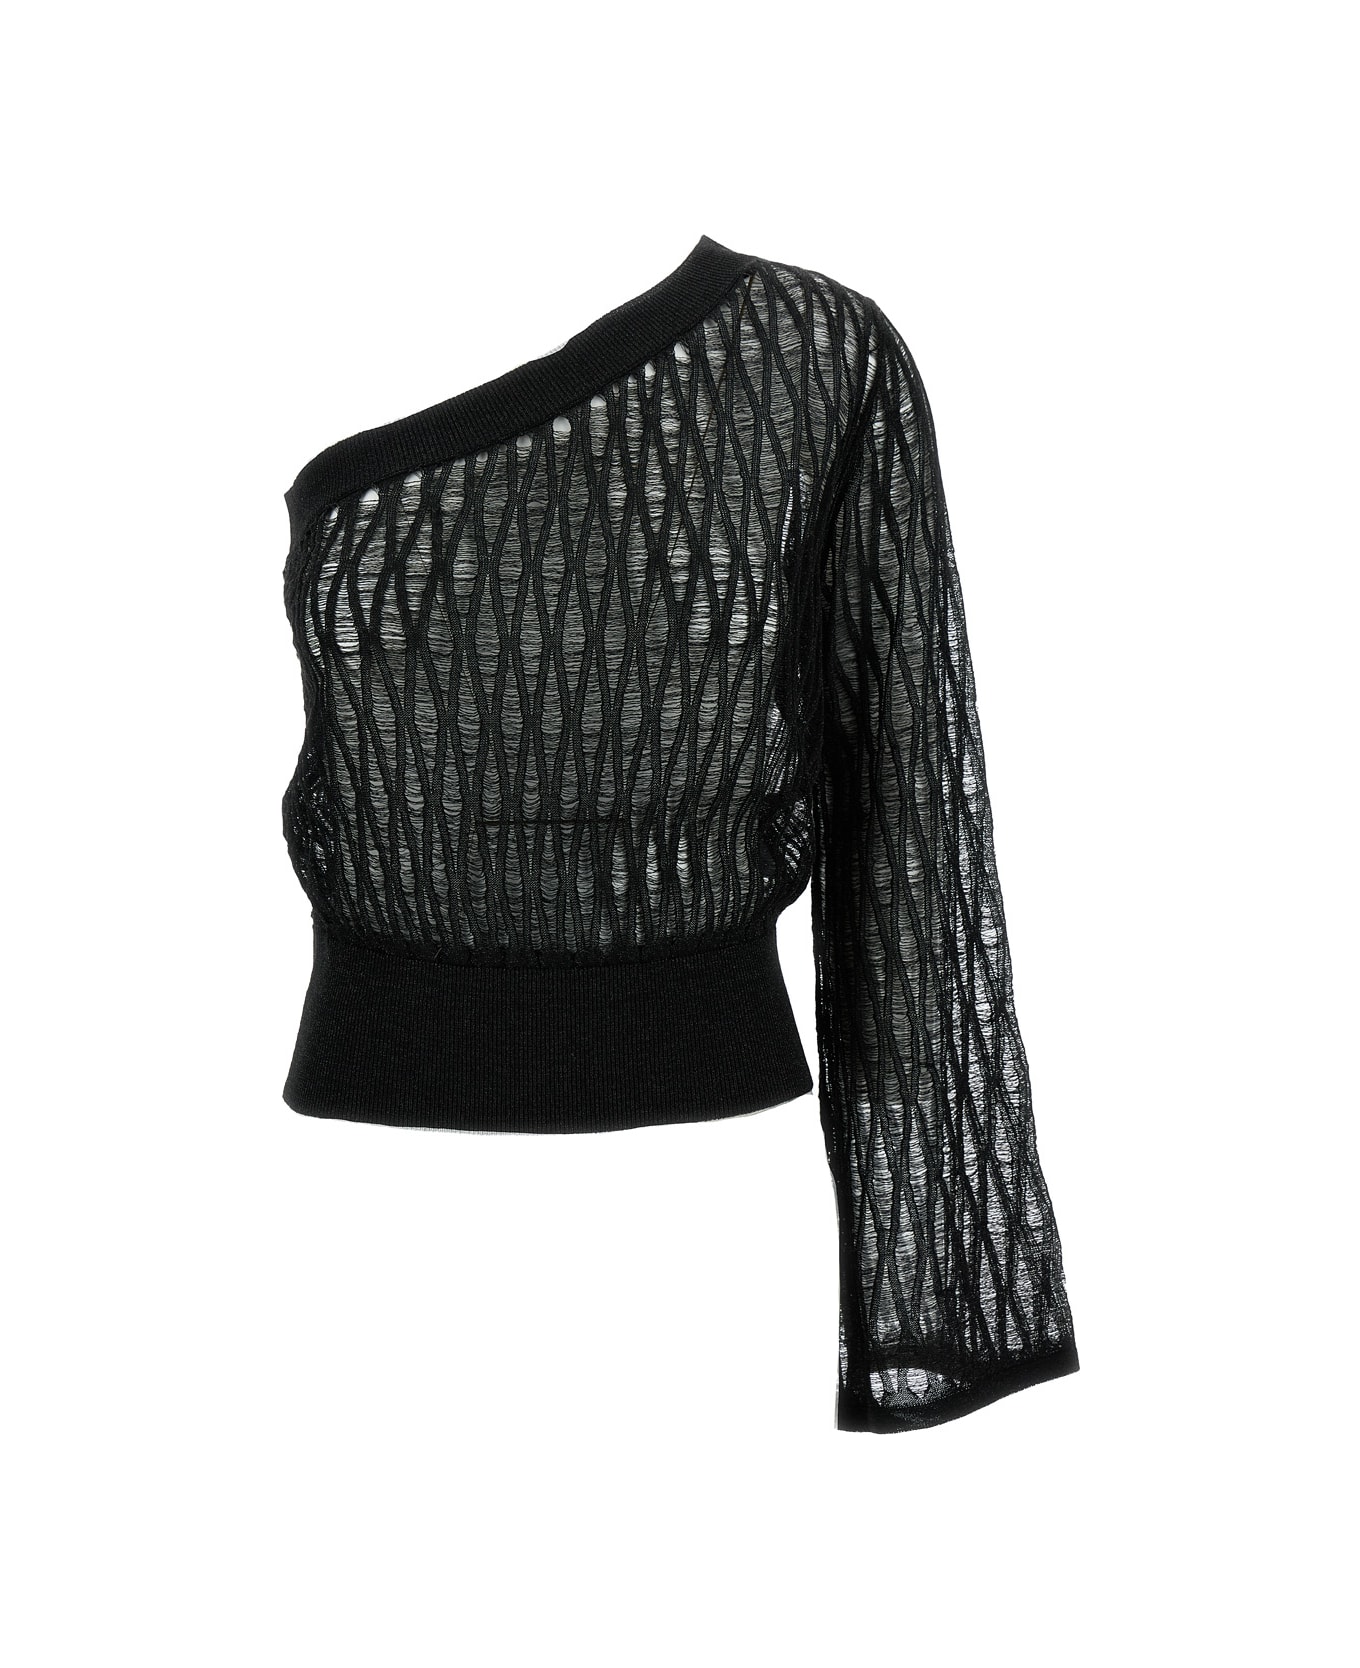 Federica Tosi Black One-shoulder Knit Top In Viscose Blend Woman - Black ニットウェア